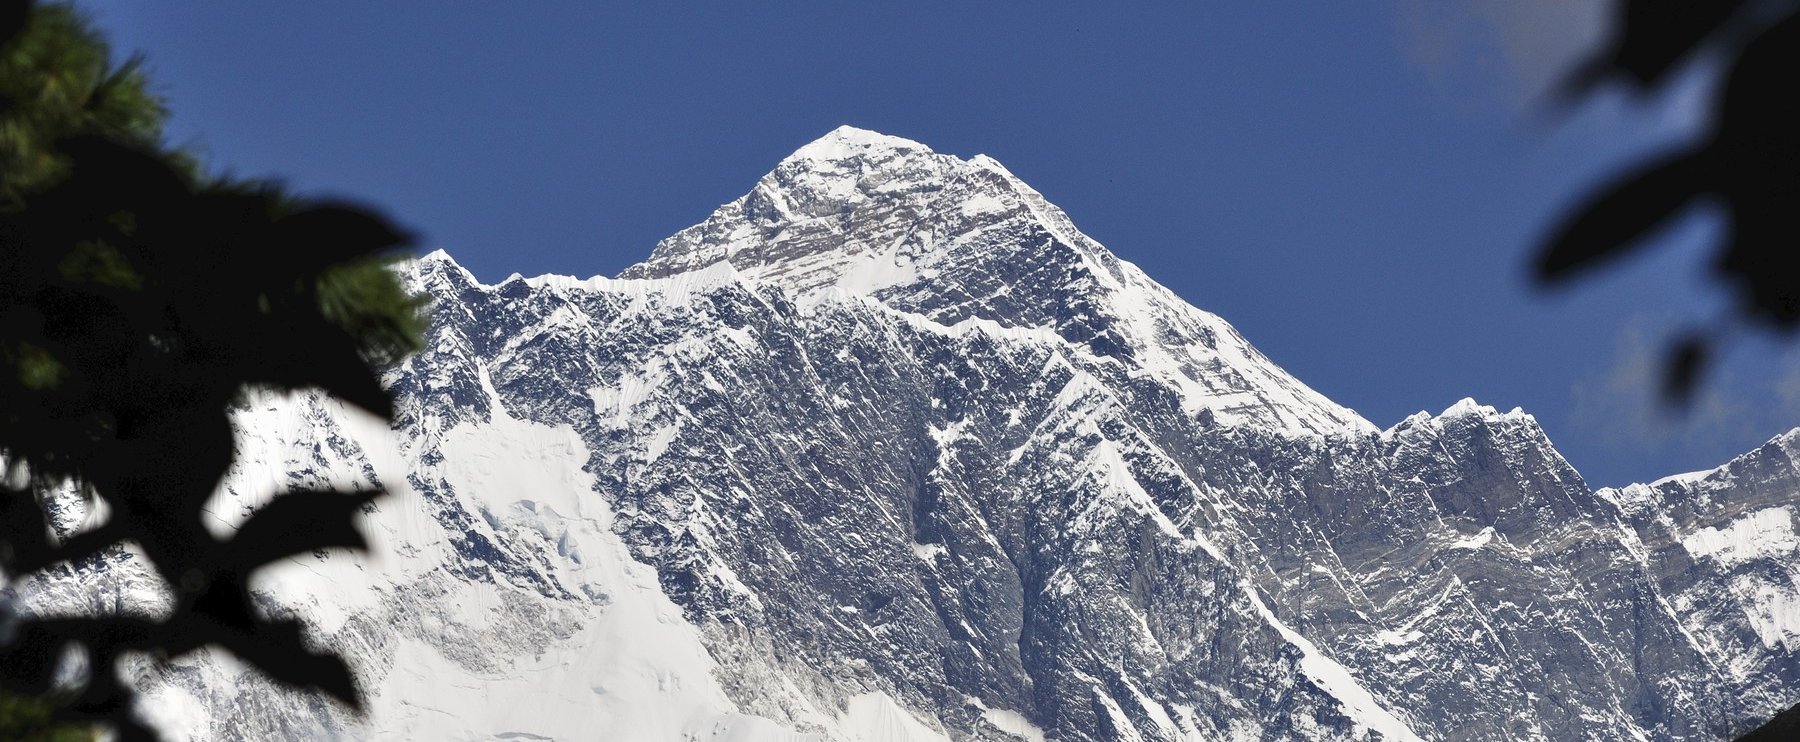 Döbbenetes felvételek kerültek ki a Mount Everestről, tényleg ilyen elkeserítő a helyzet?